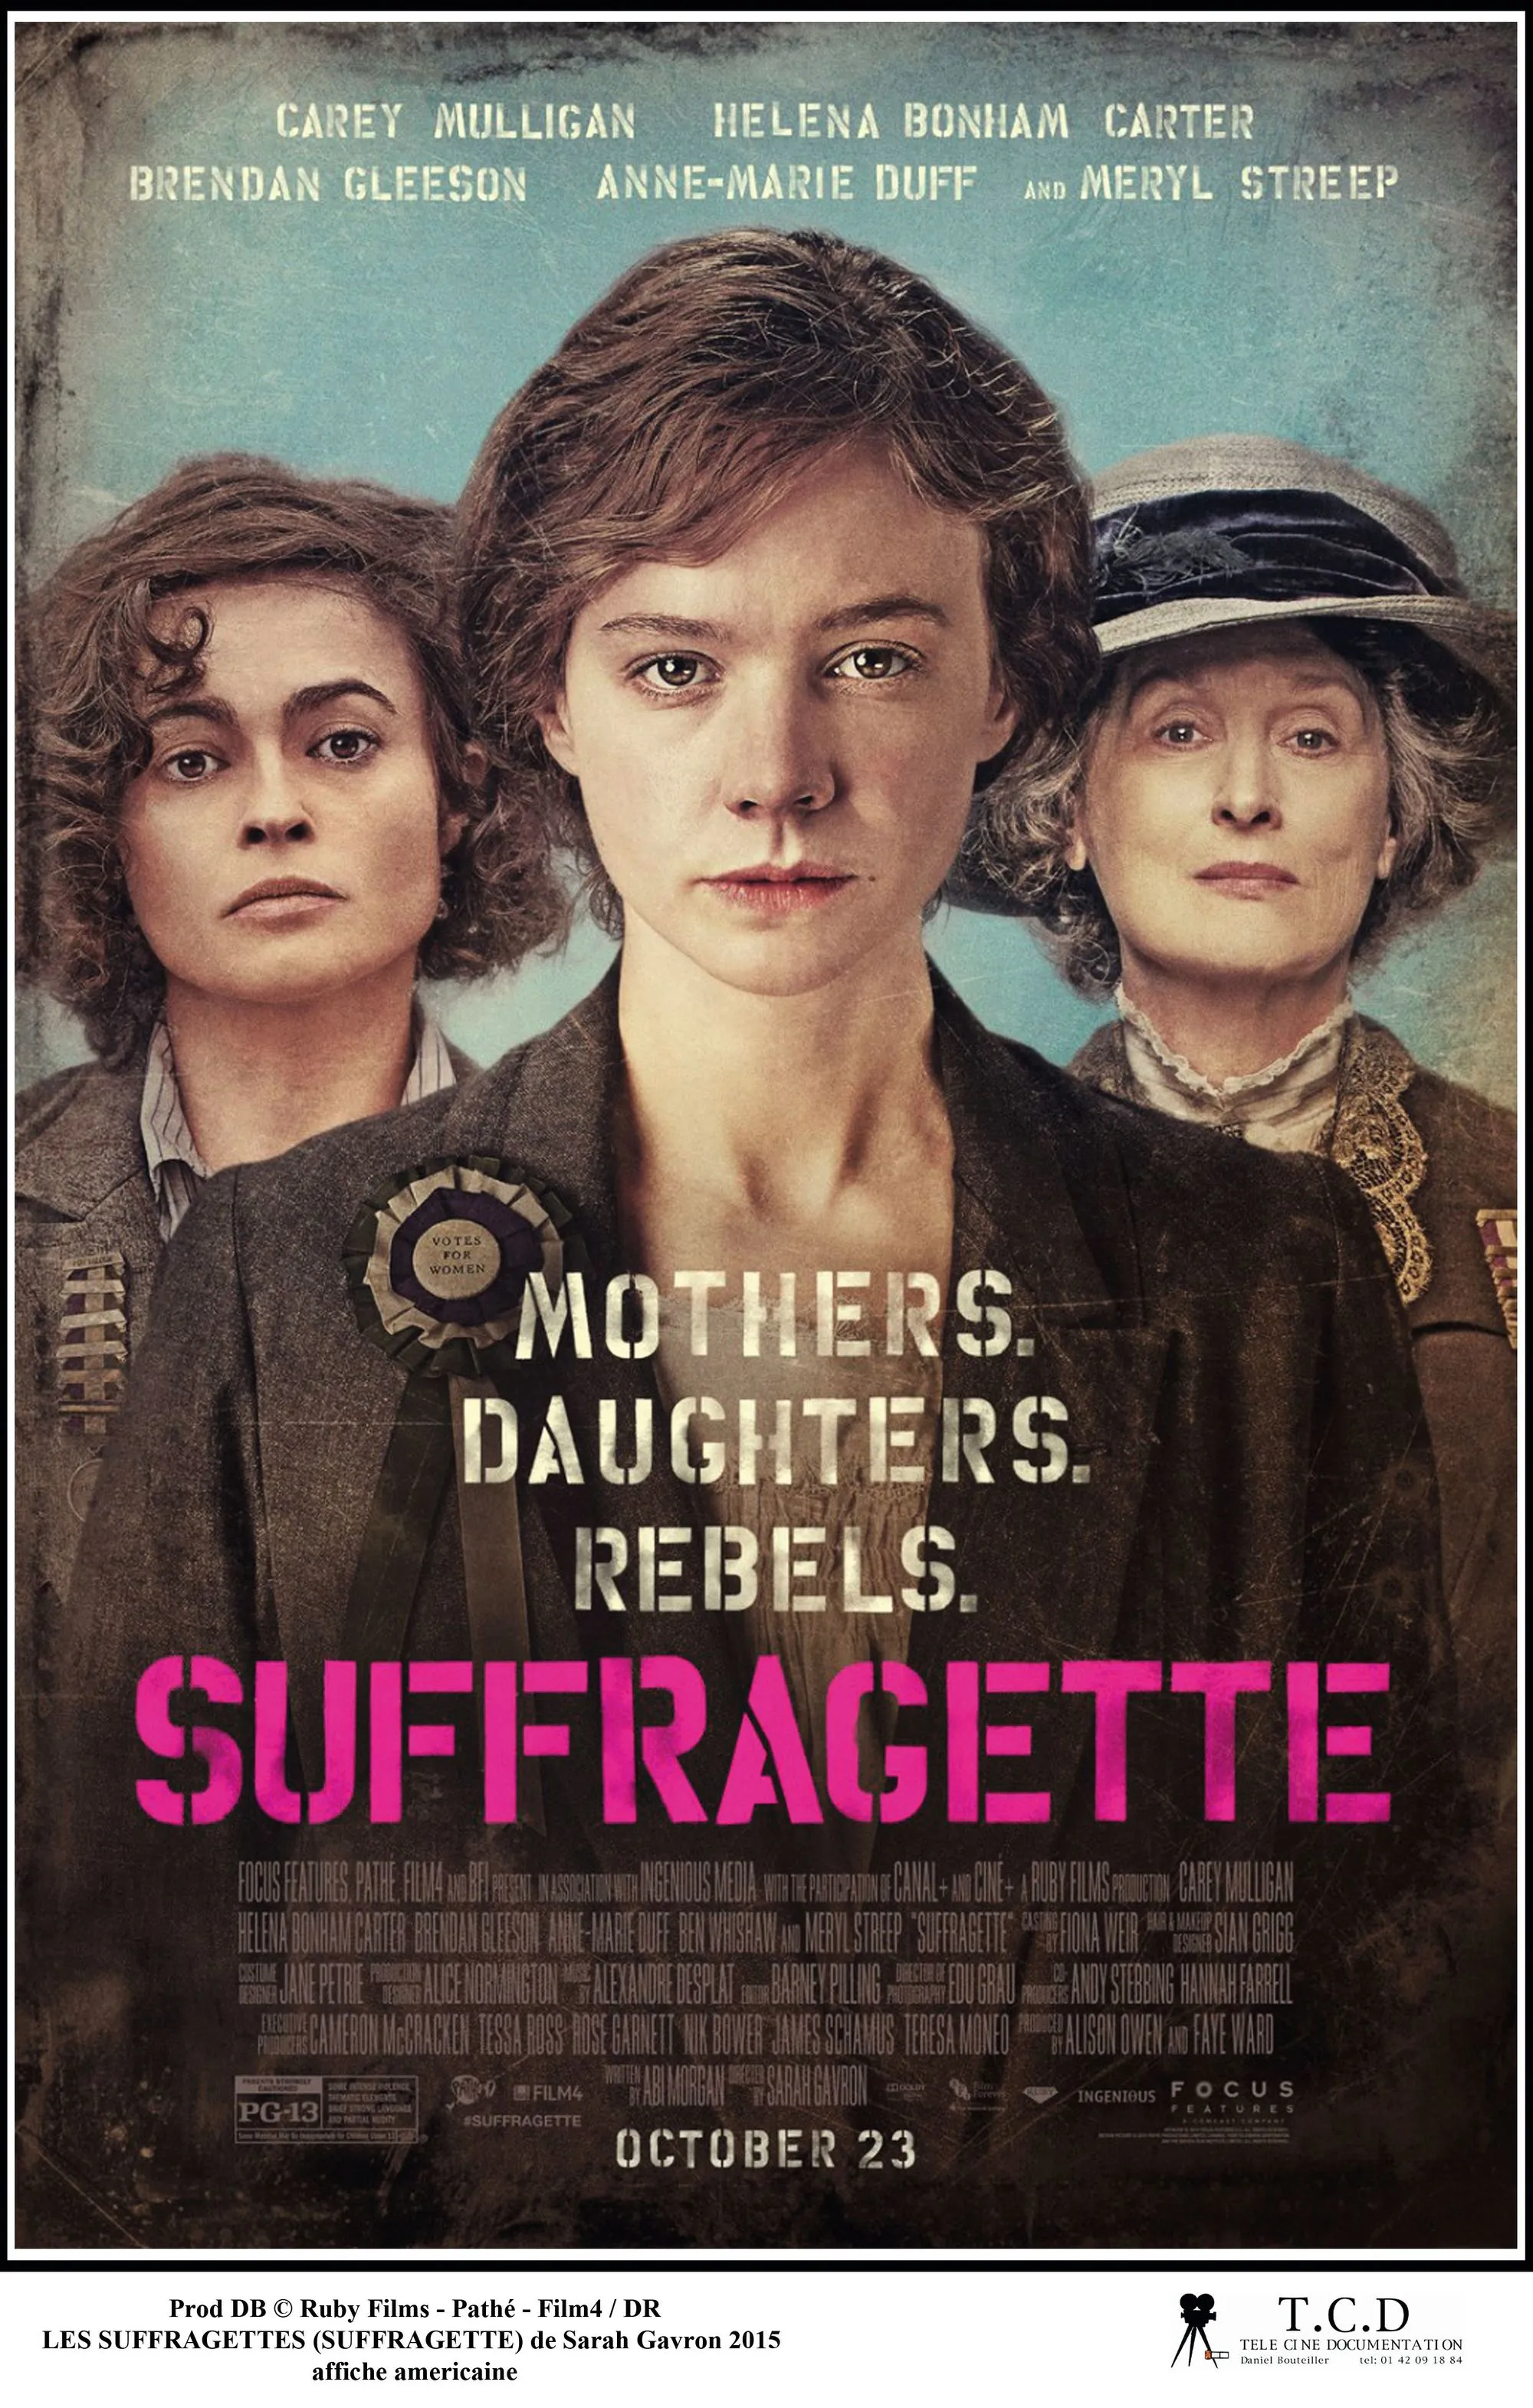 Suffragette, by Sarah Gavron, 2015